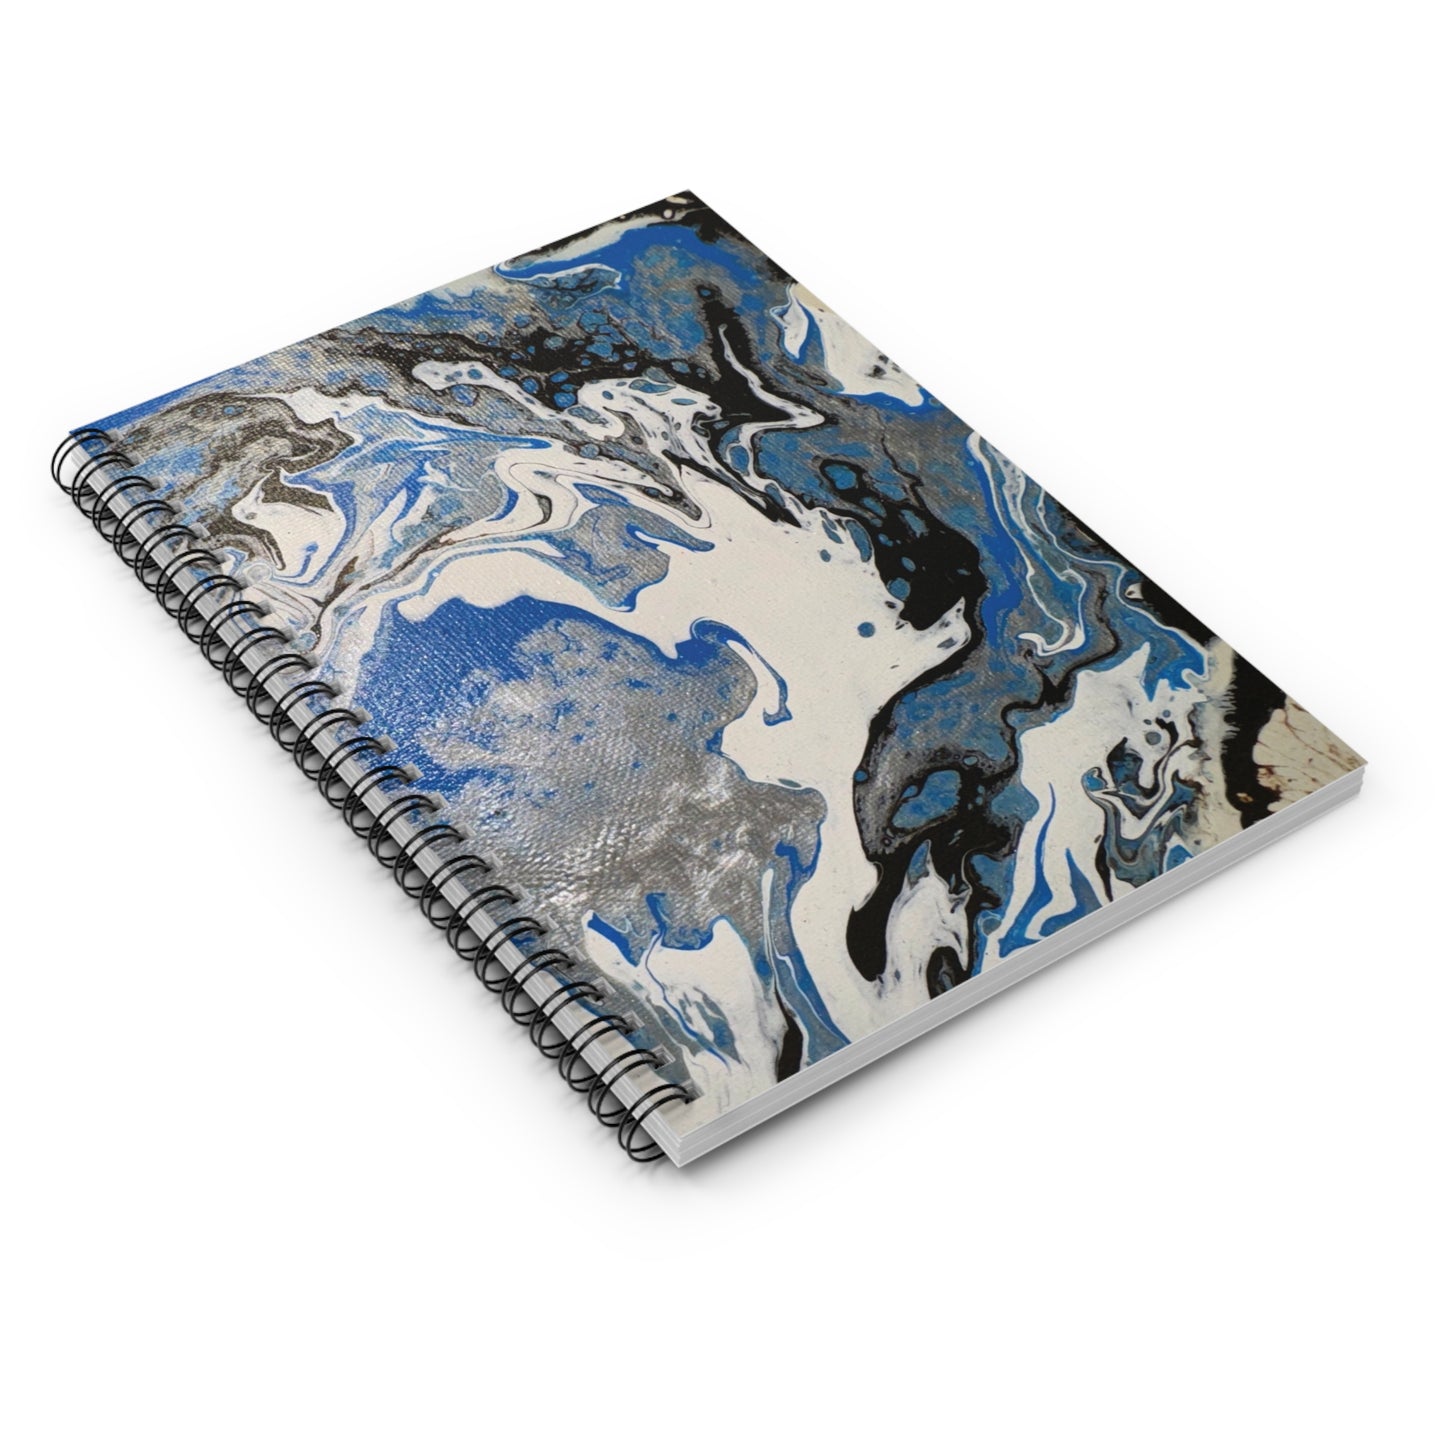 Blue Fluid Art Spiral Notebook - Ruled Line